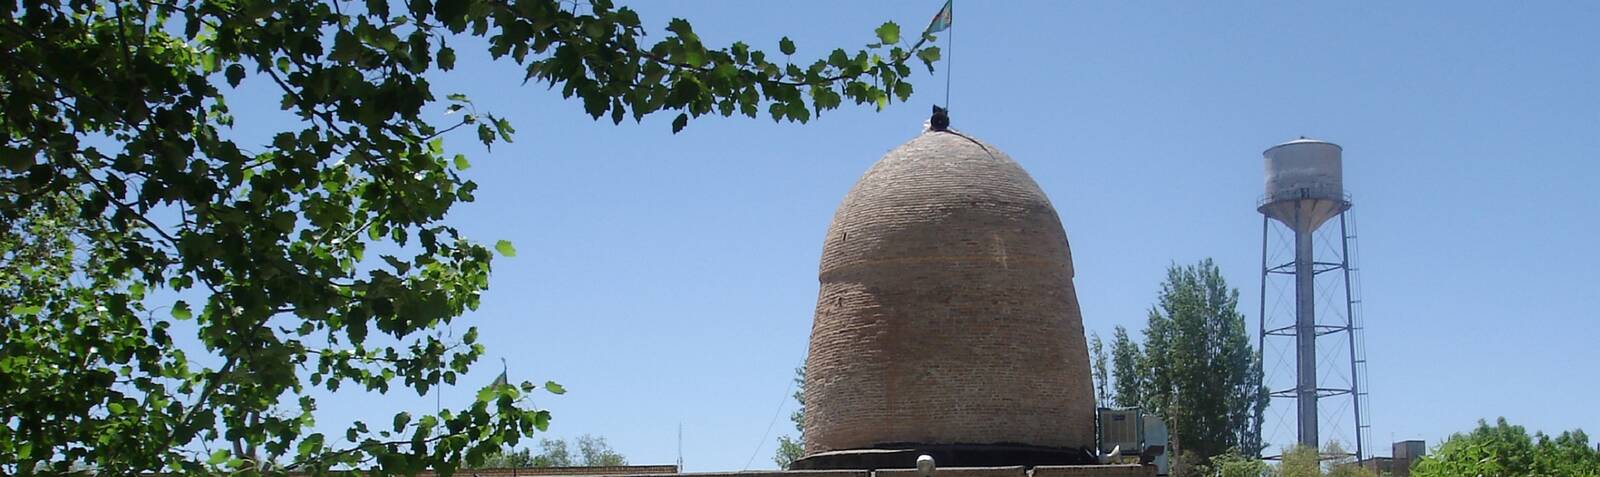 Qeidar Nabi Shrine